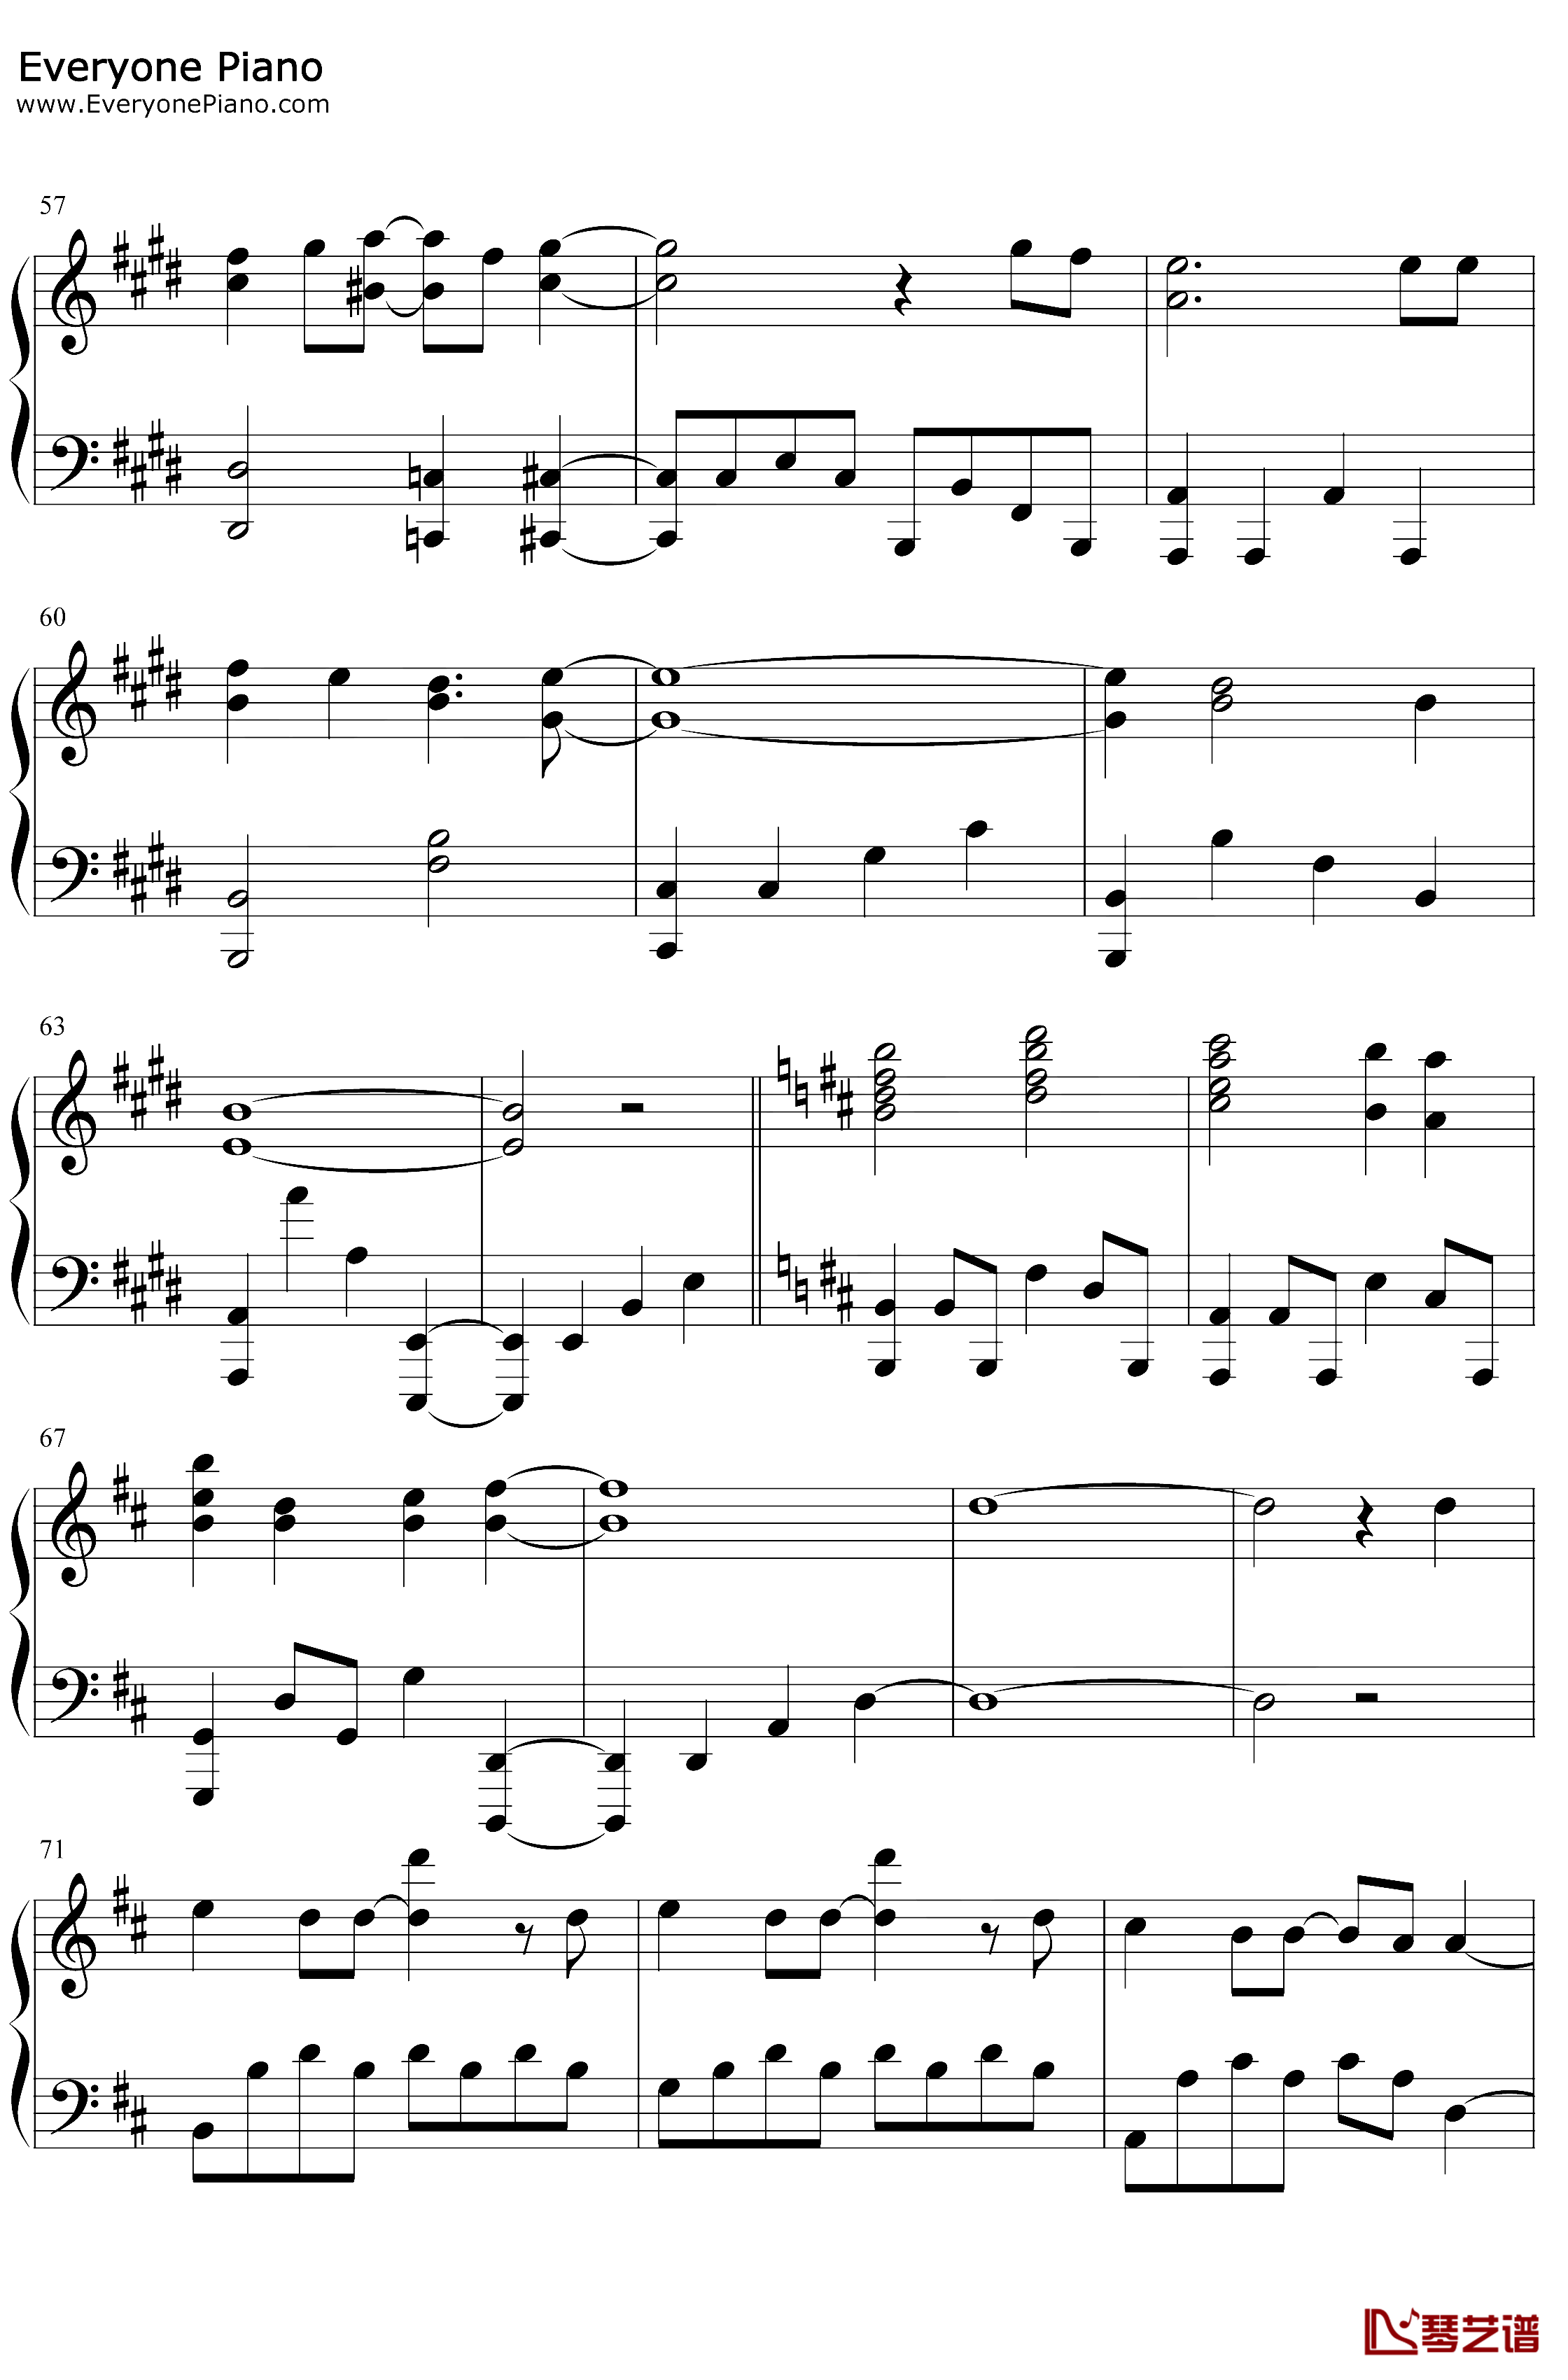 炎钢琴谱-LiSA-鬼灭之刃无限列车篇主题曲4